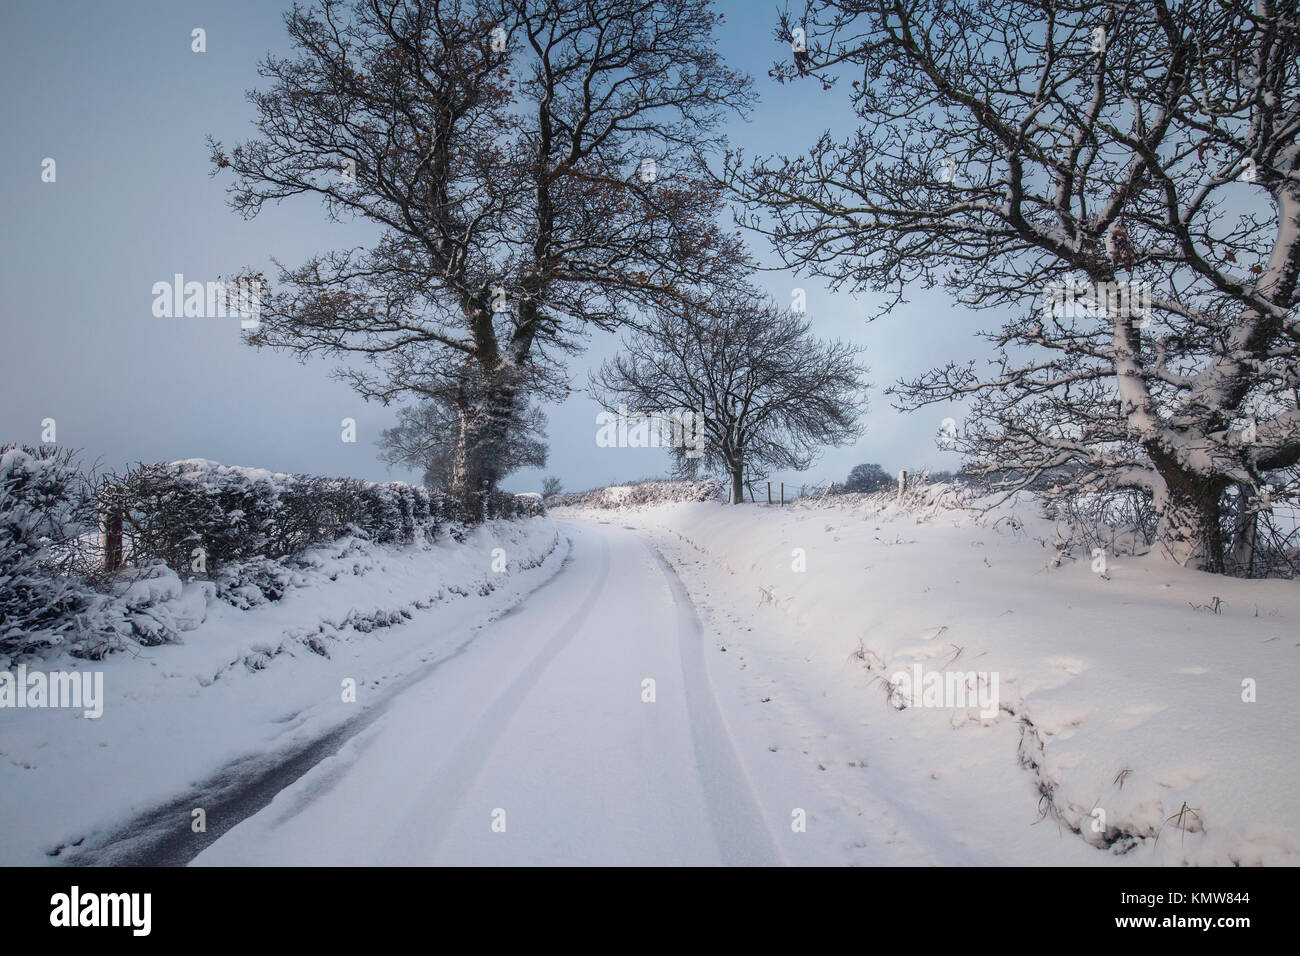 Britische Landschaft Weg und Bäume im Schnee auf dunklem Hintergrund des blauen Himmels abgedeckt Stockfoto